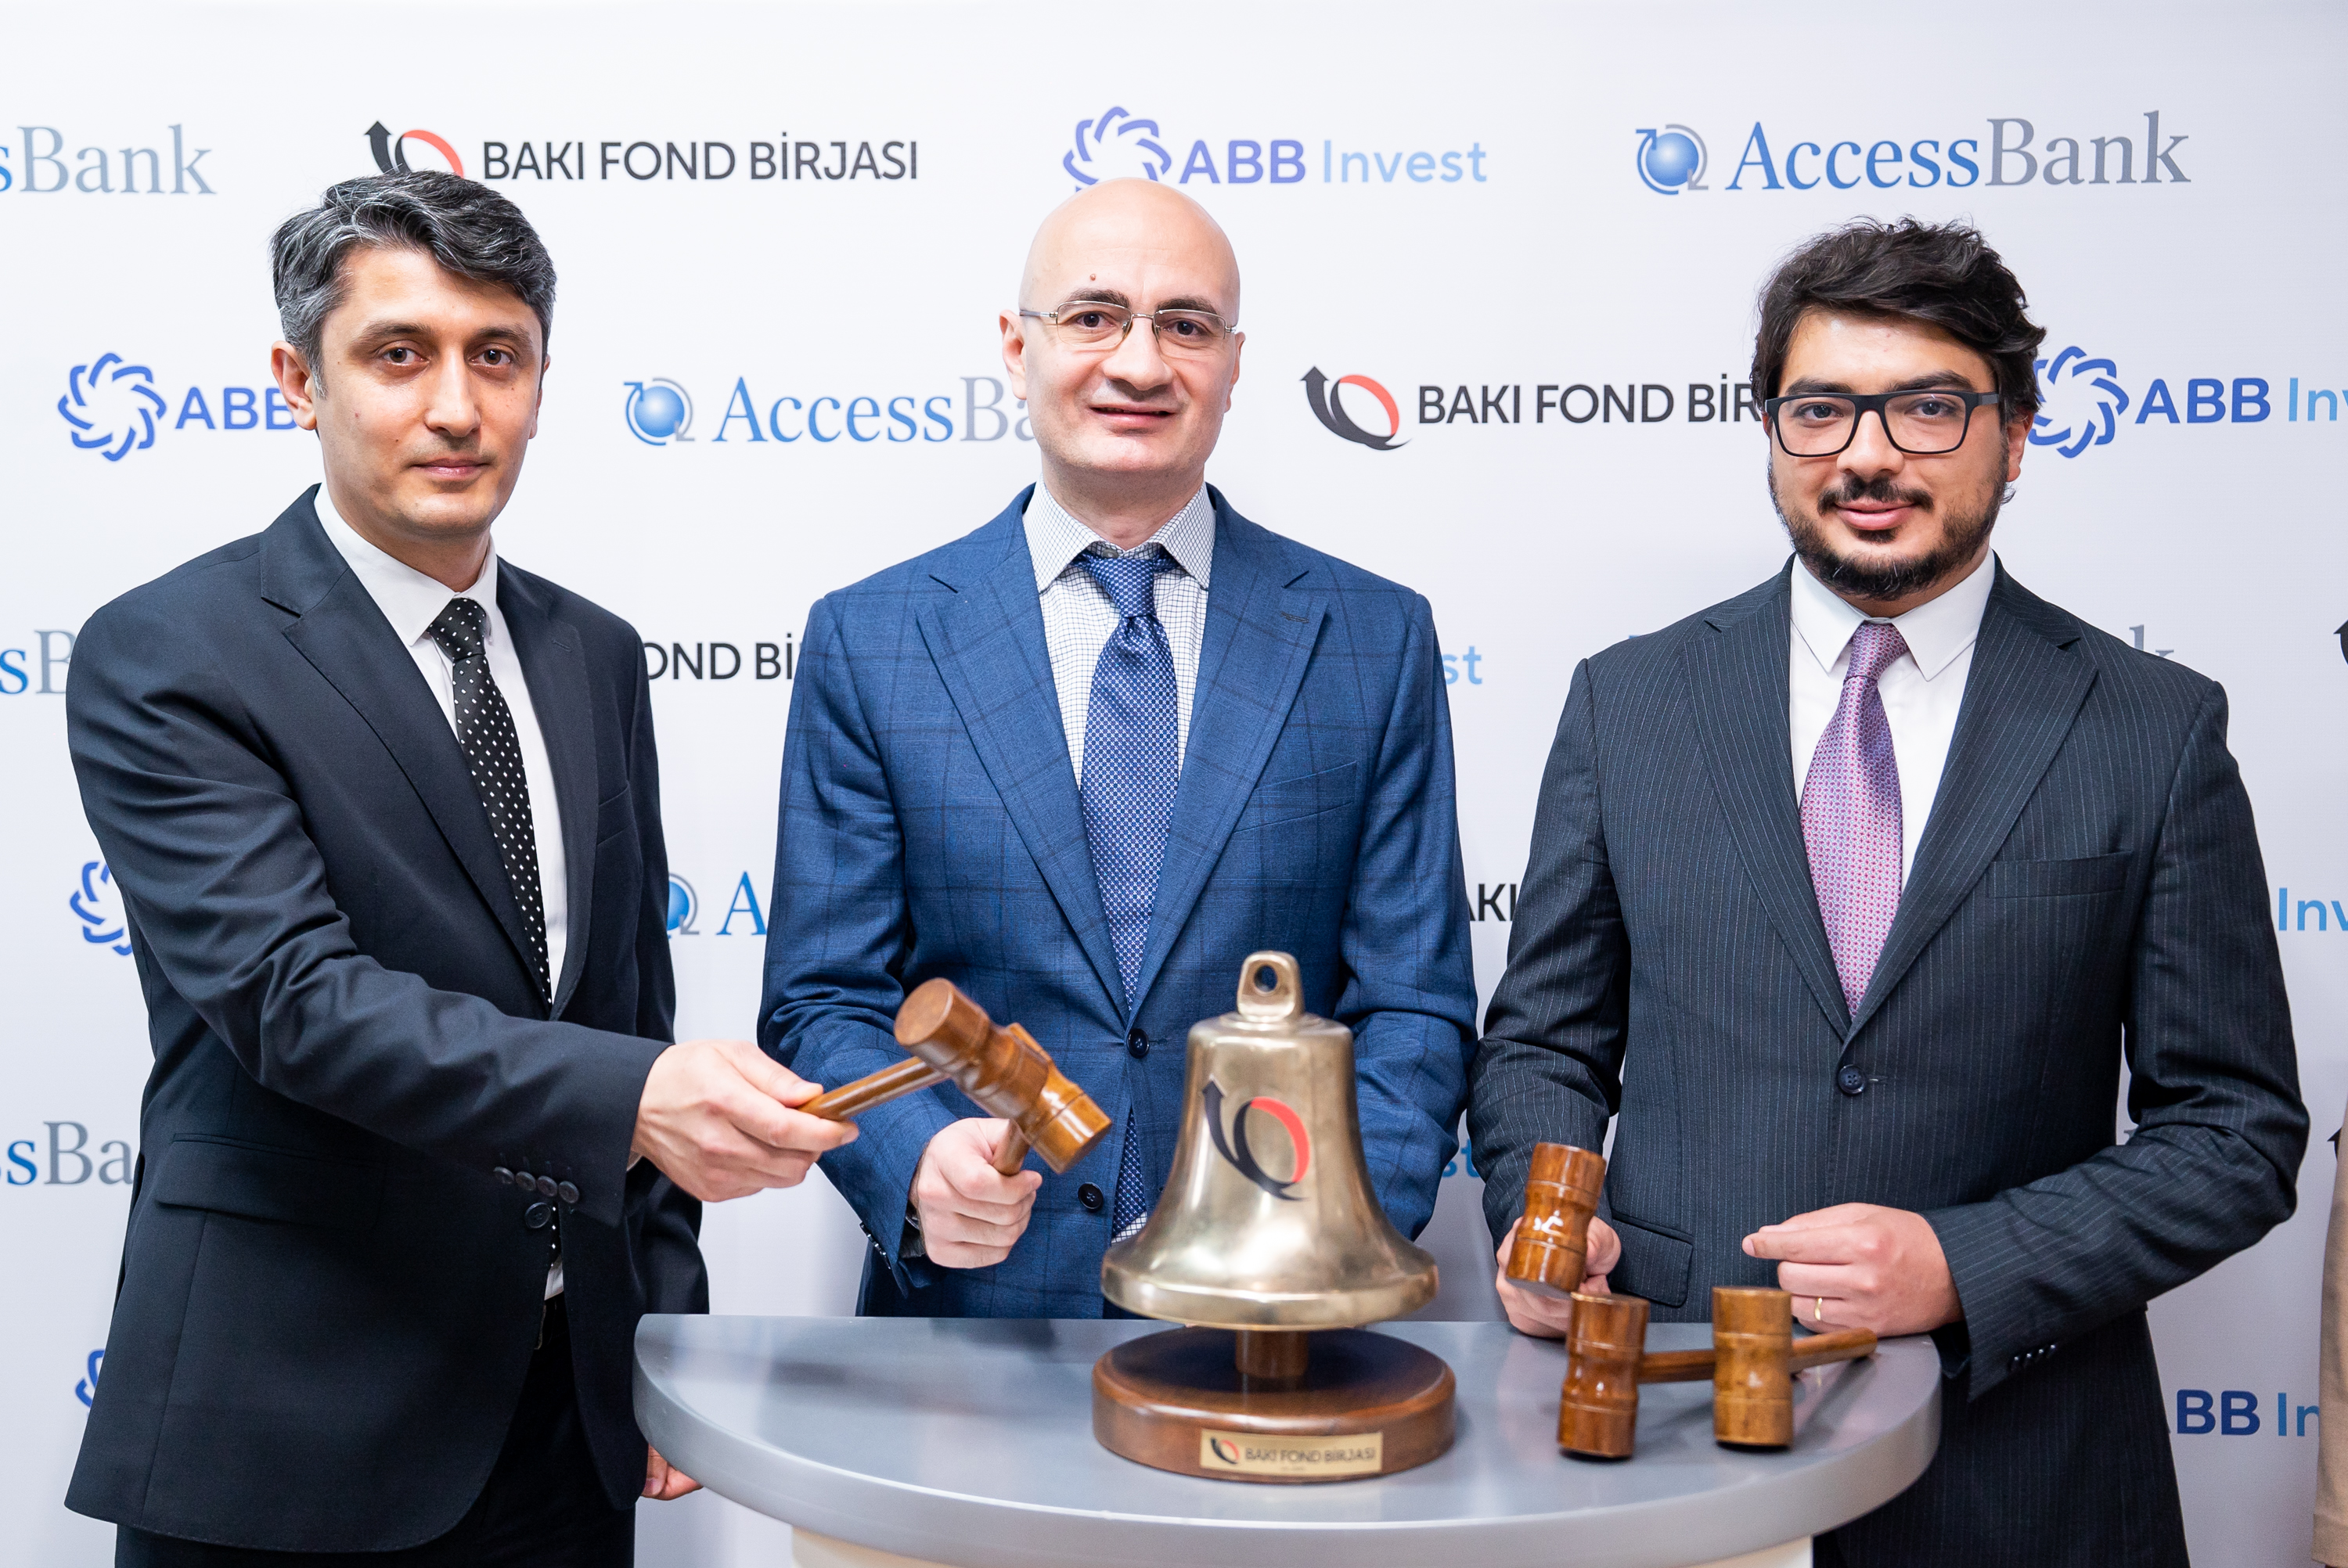 На Бакинской фондовой бирже состоялось церемония «Звонка Открытия» по выпуску облигаций AccessBank